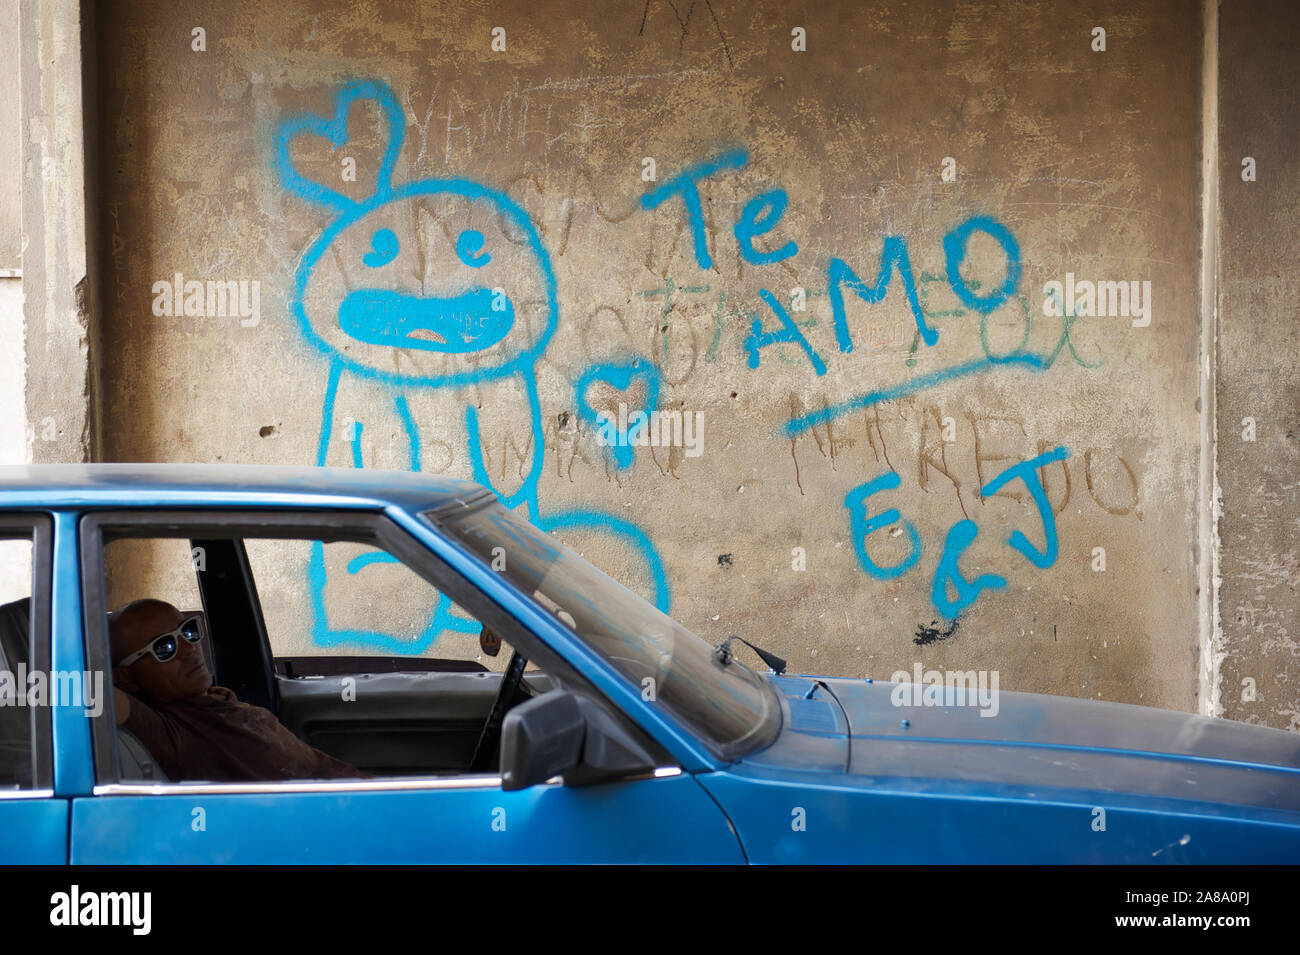 Havanna - 17. MAI 2011: eine Kubanische Mann sitzt in blau Auto neben einer Wand mit Graffiti in Spanisch, die besagt, dass te amo (ich liebe Dich). Stockfoto